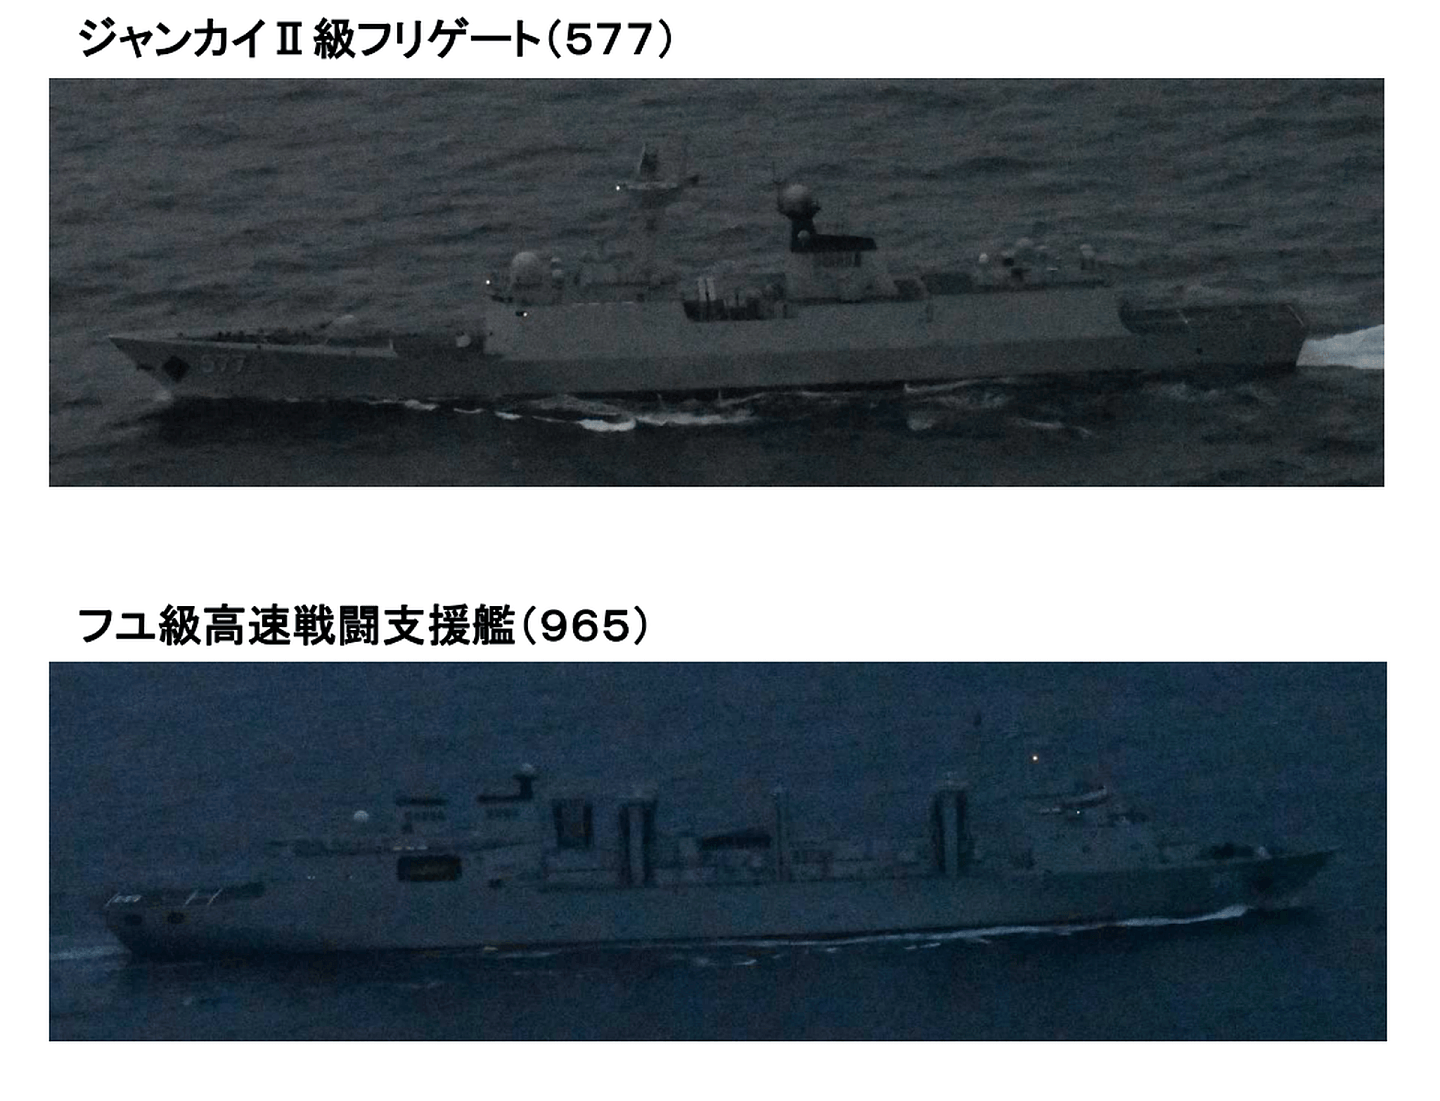 除辽宁舰外，另外5艘军舰分别是055型驱逐舰南昌舰，052D型驱逐舰成都舰、太原舰，054A型护卫舰黄冈舰及901型综合补给舰呼伦湖舰。（日本防卫省统合幕僚监部官网截图）